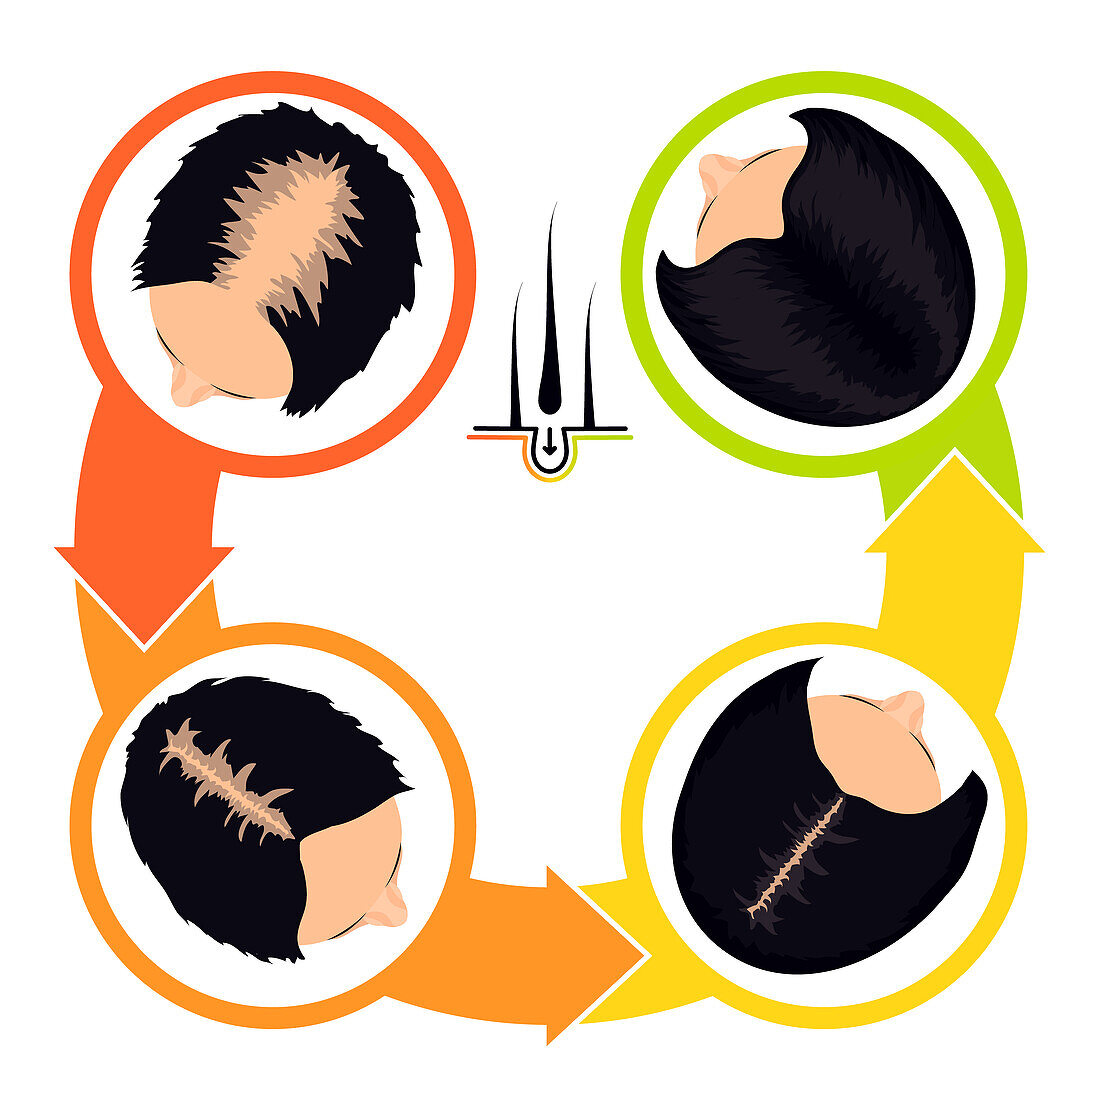 Hair transplantation in women, illustration